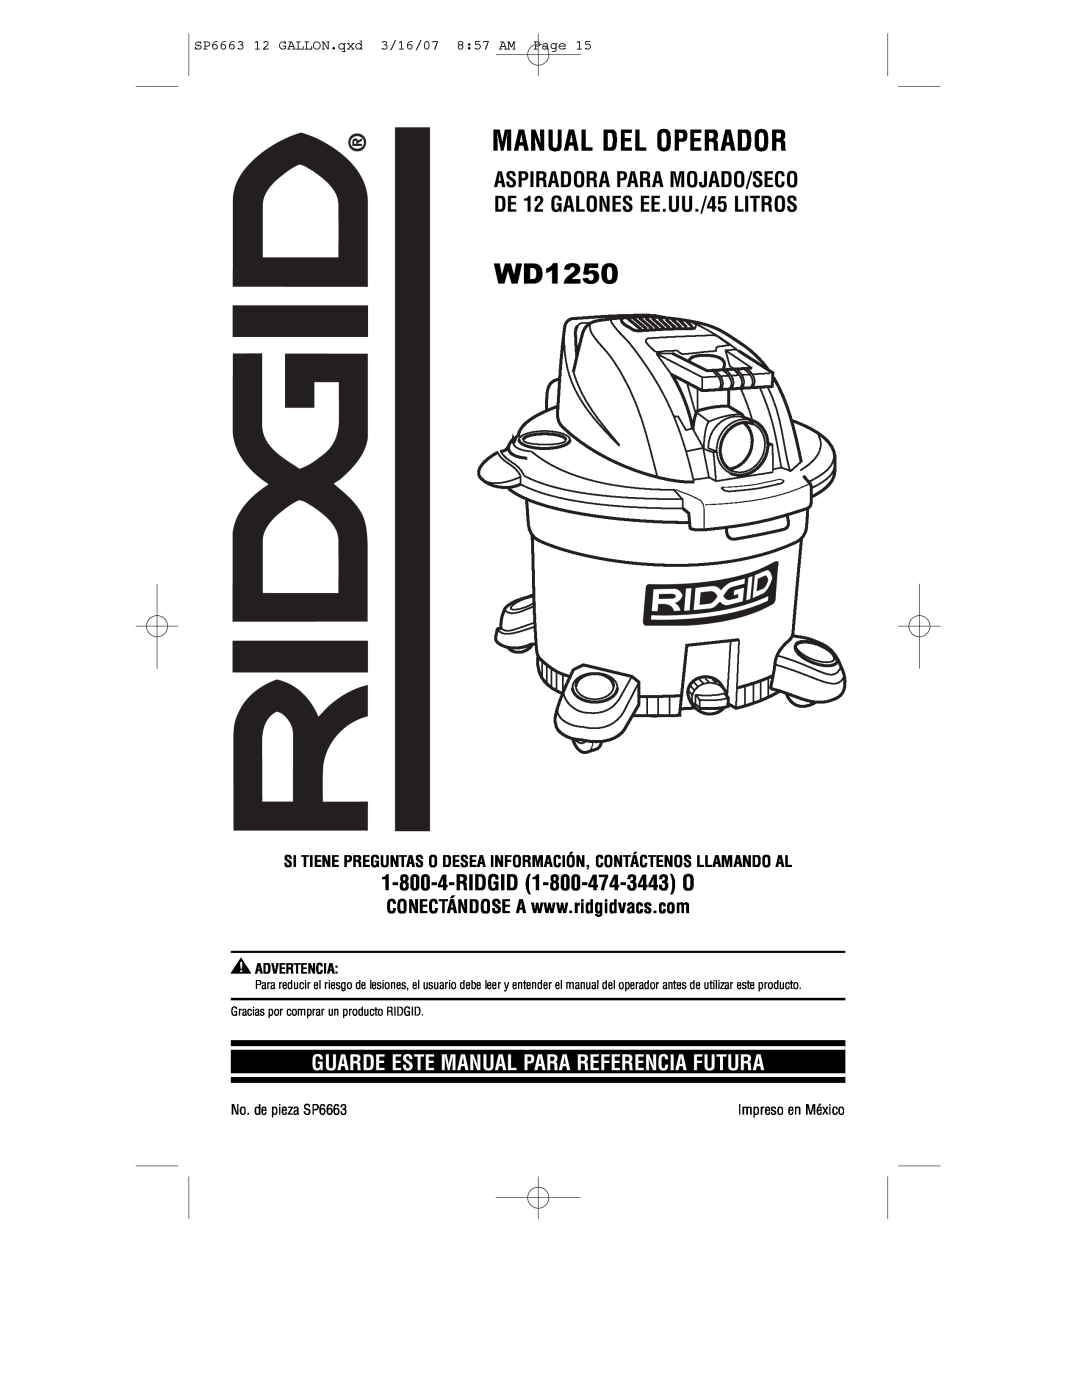 RIDGID WD1250 manual Aspiradora Para Mojado/Seco, DE 12 GALONES EE.UU./45 LITROS, Guarde Este Manual Para Referencia Futura 